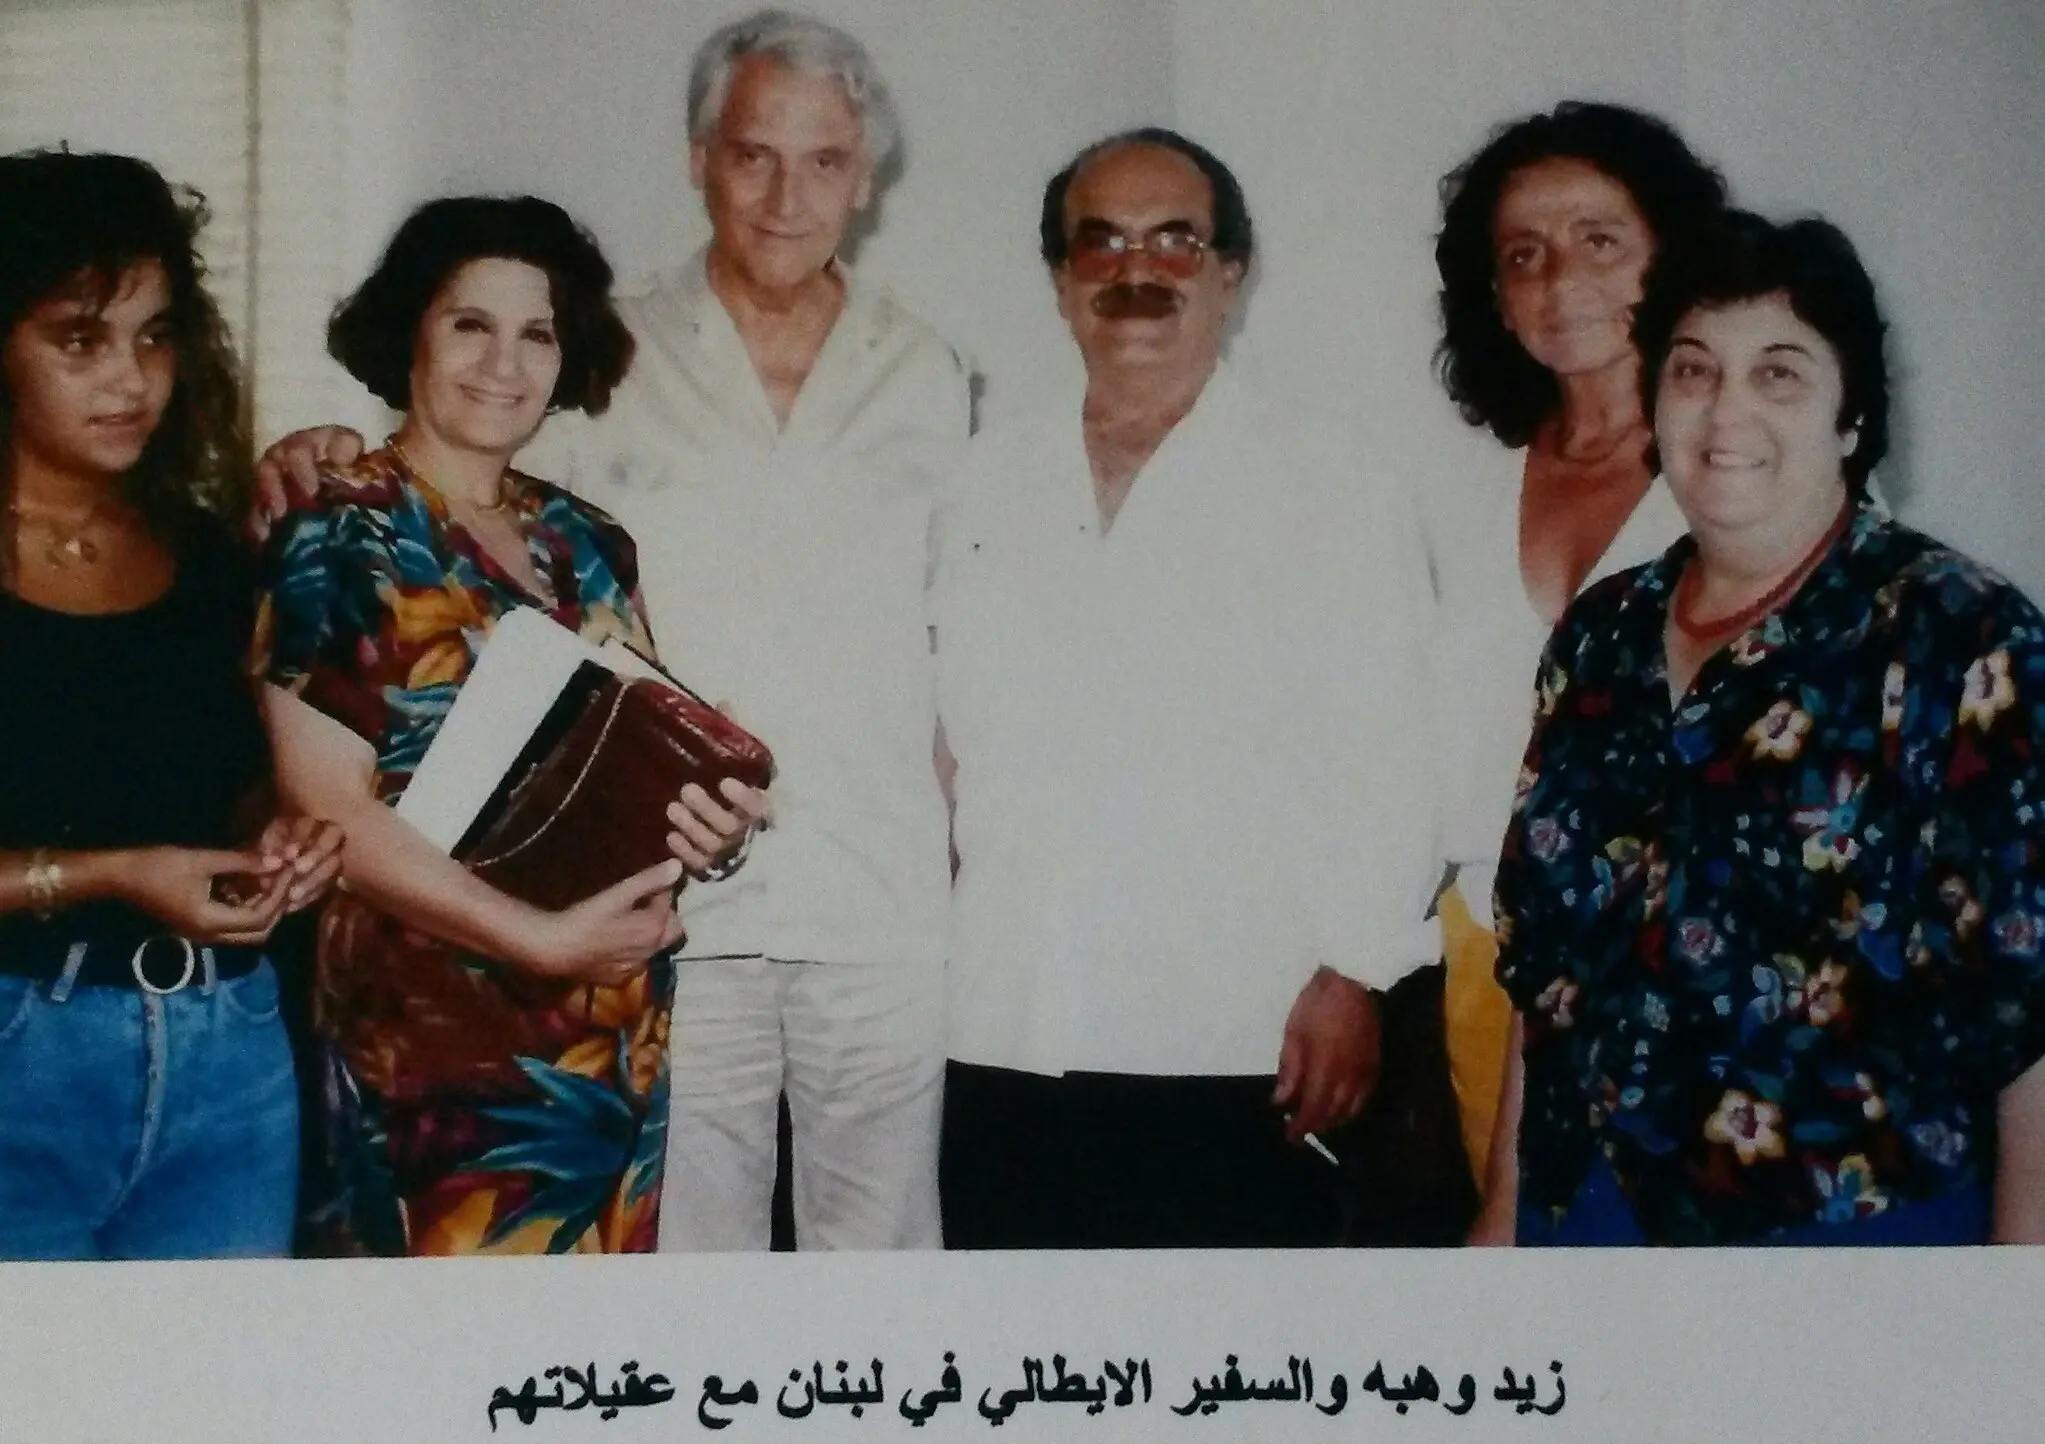 زيد وهبه والسفير الإيطالي في لبنان - أواخر الثمانينات